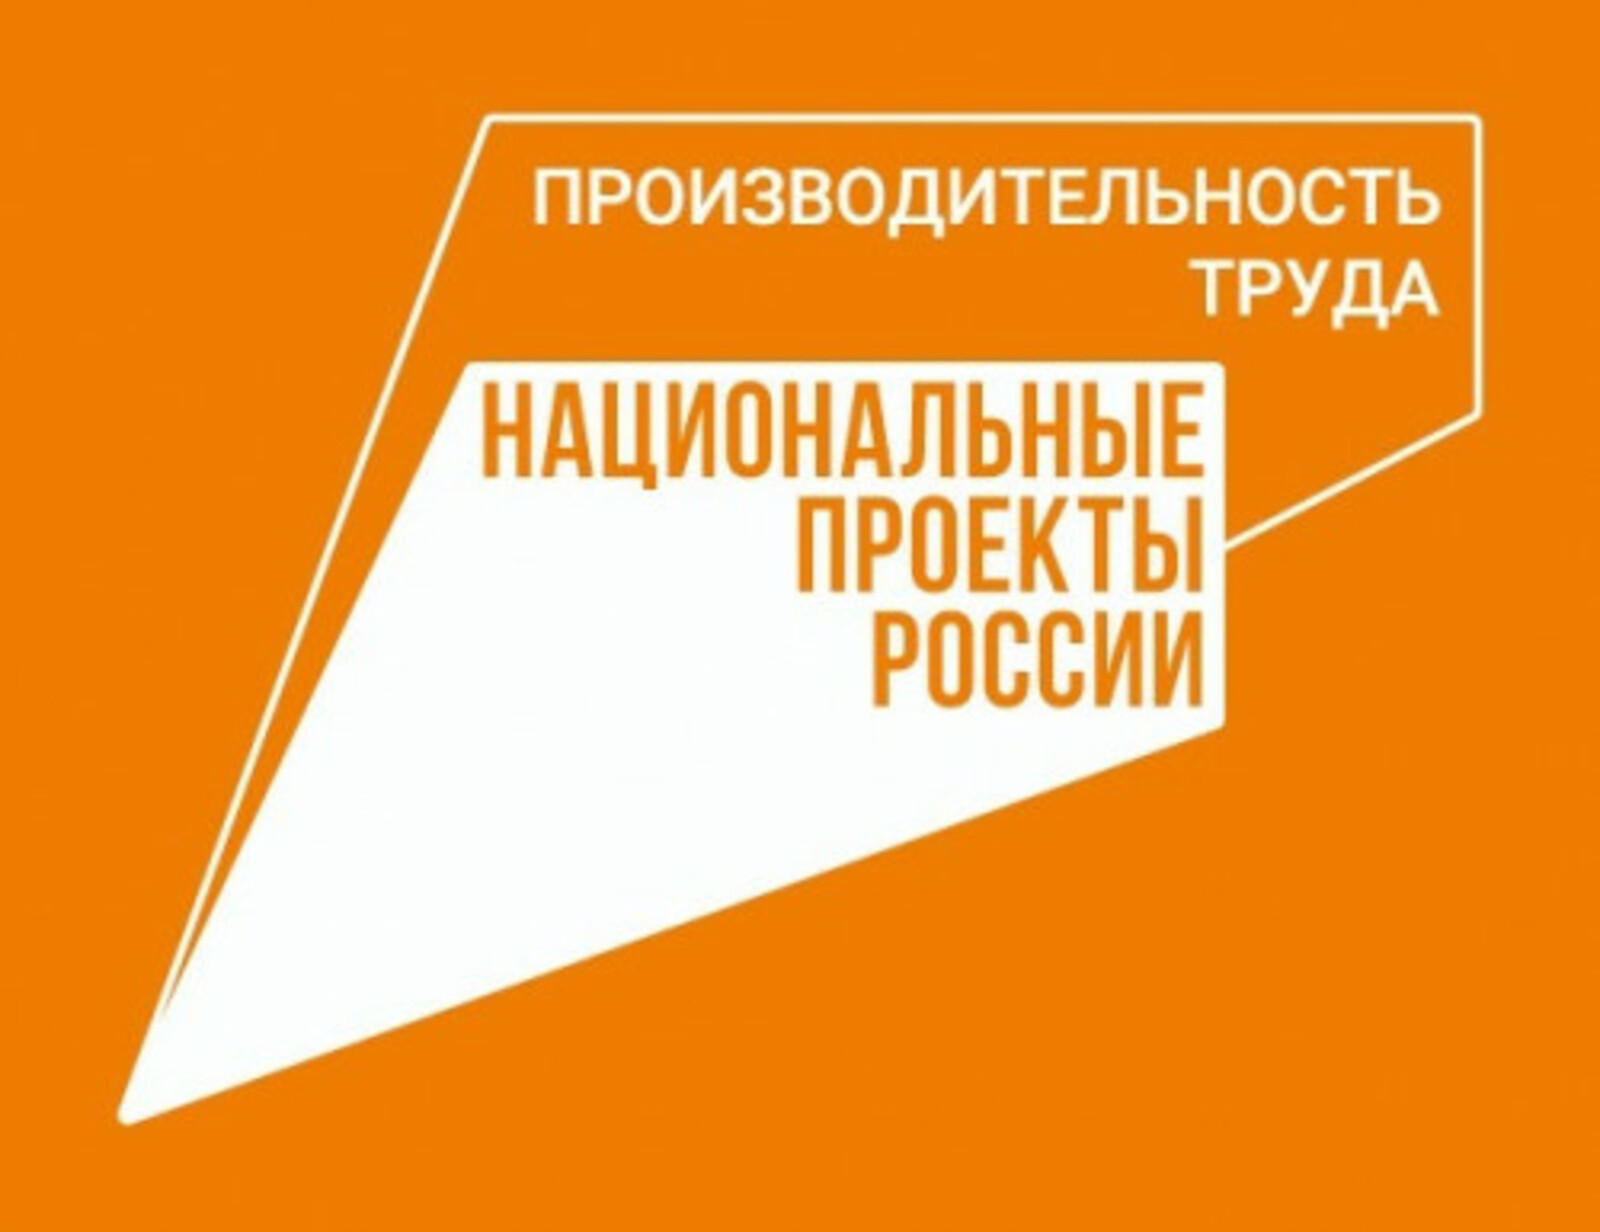 В Башкортостане нацпроект «Производительность труда» охватил более 59 тысяч работников из 160 предприятий